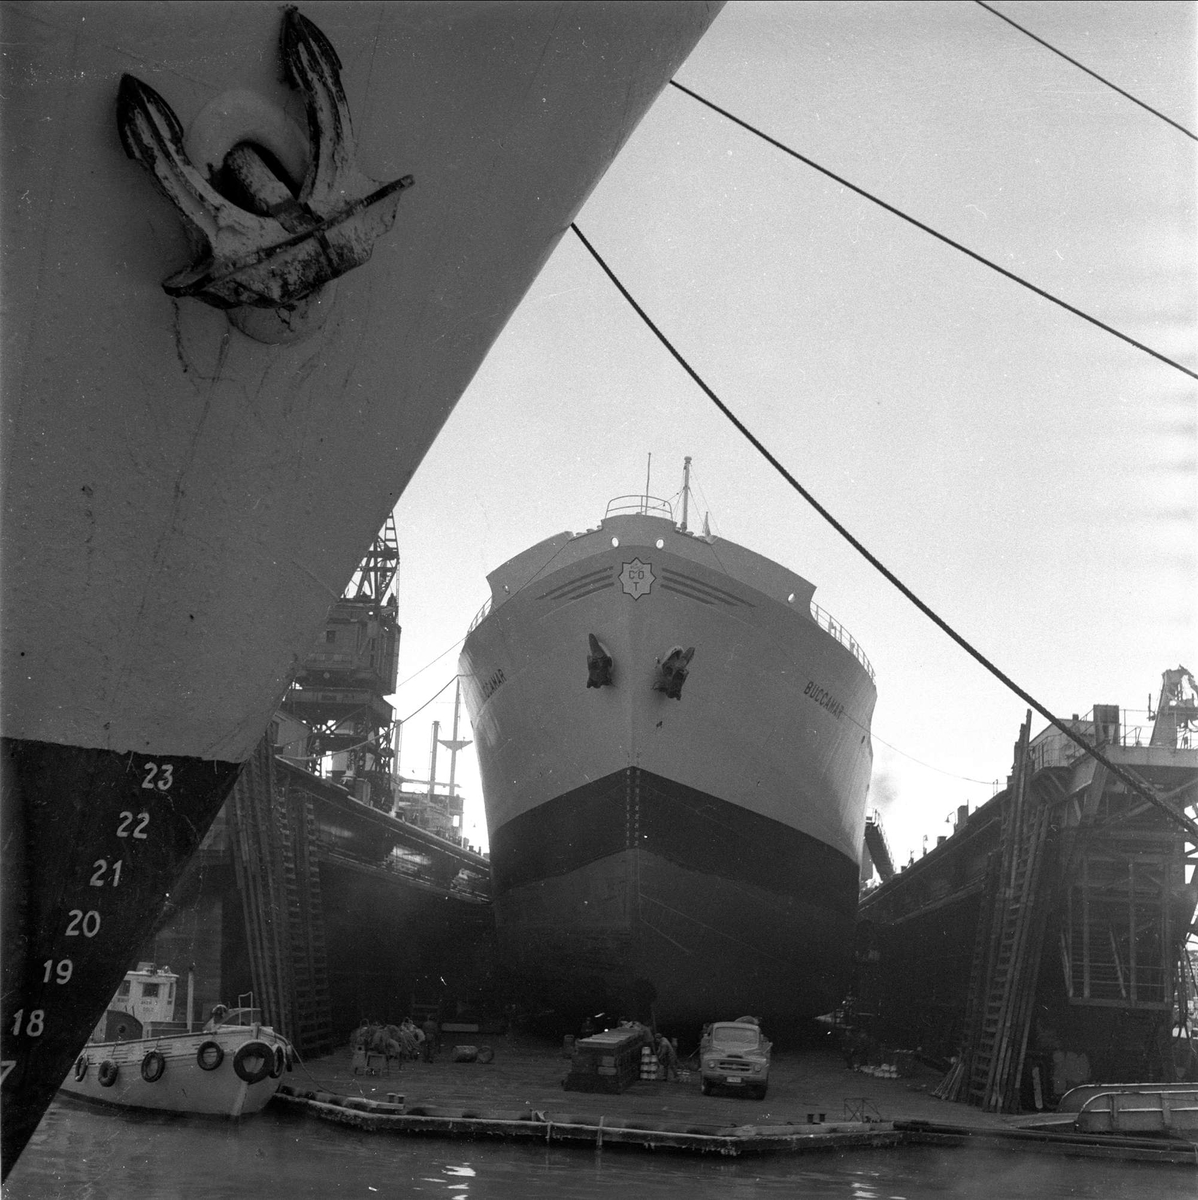 Skip ved dokk Akers mek. Verksted, Oslo, desember, 1958.